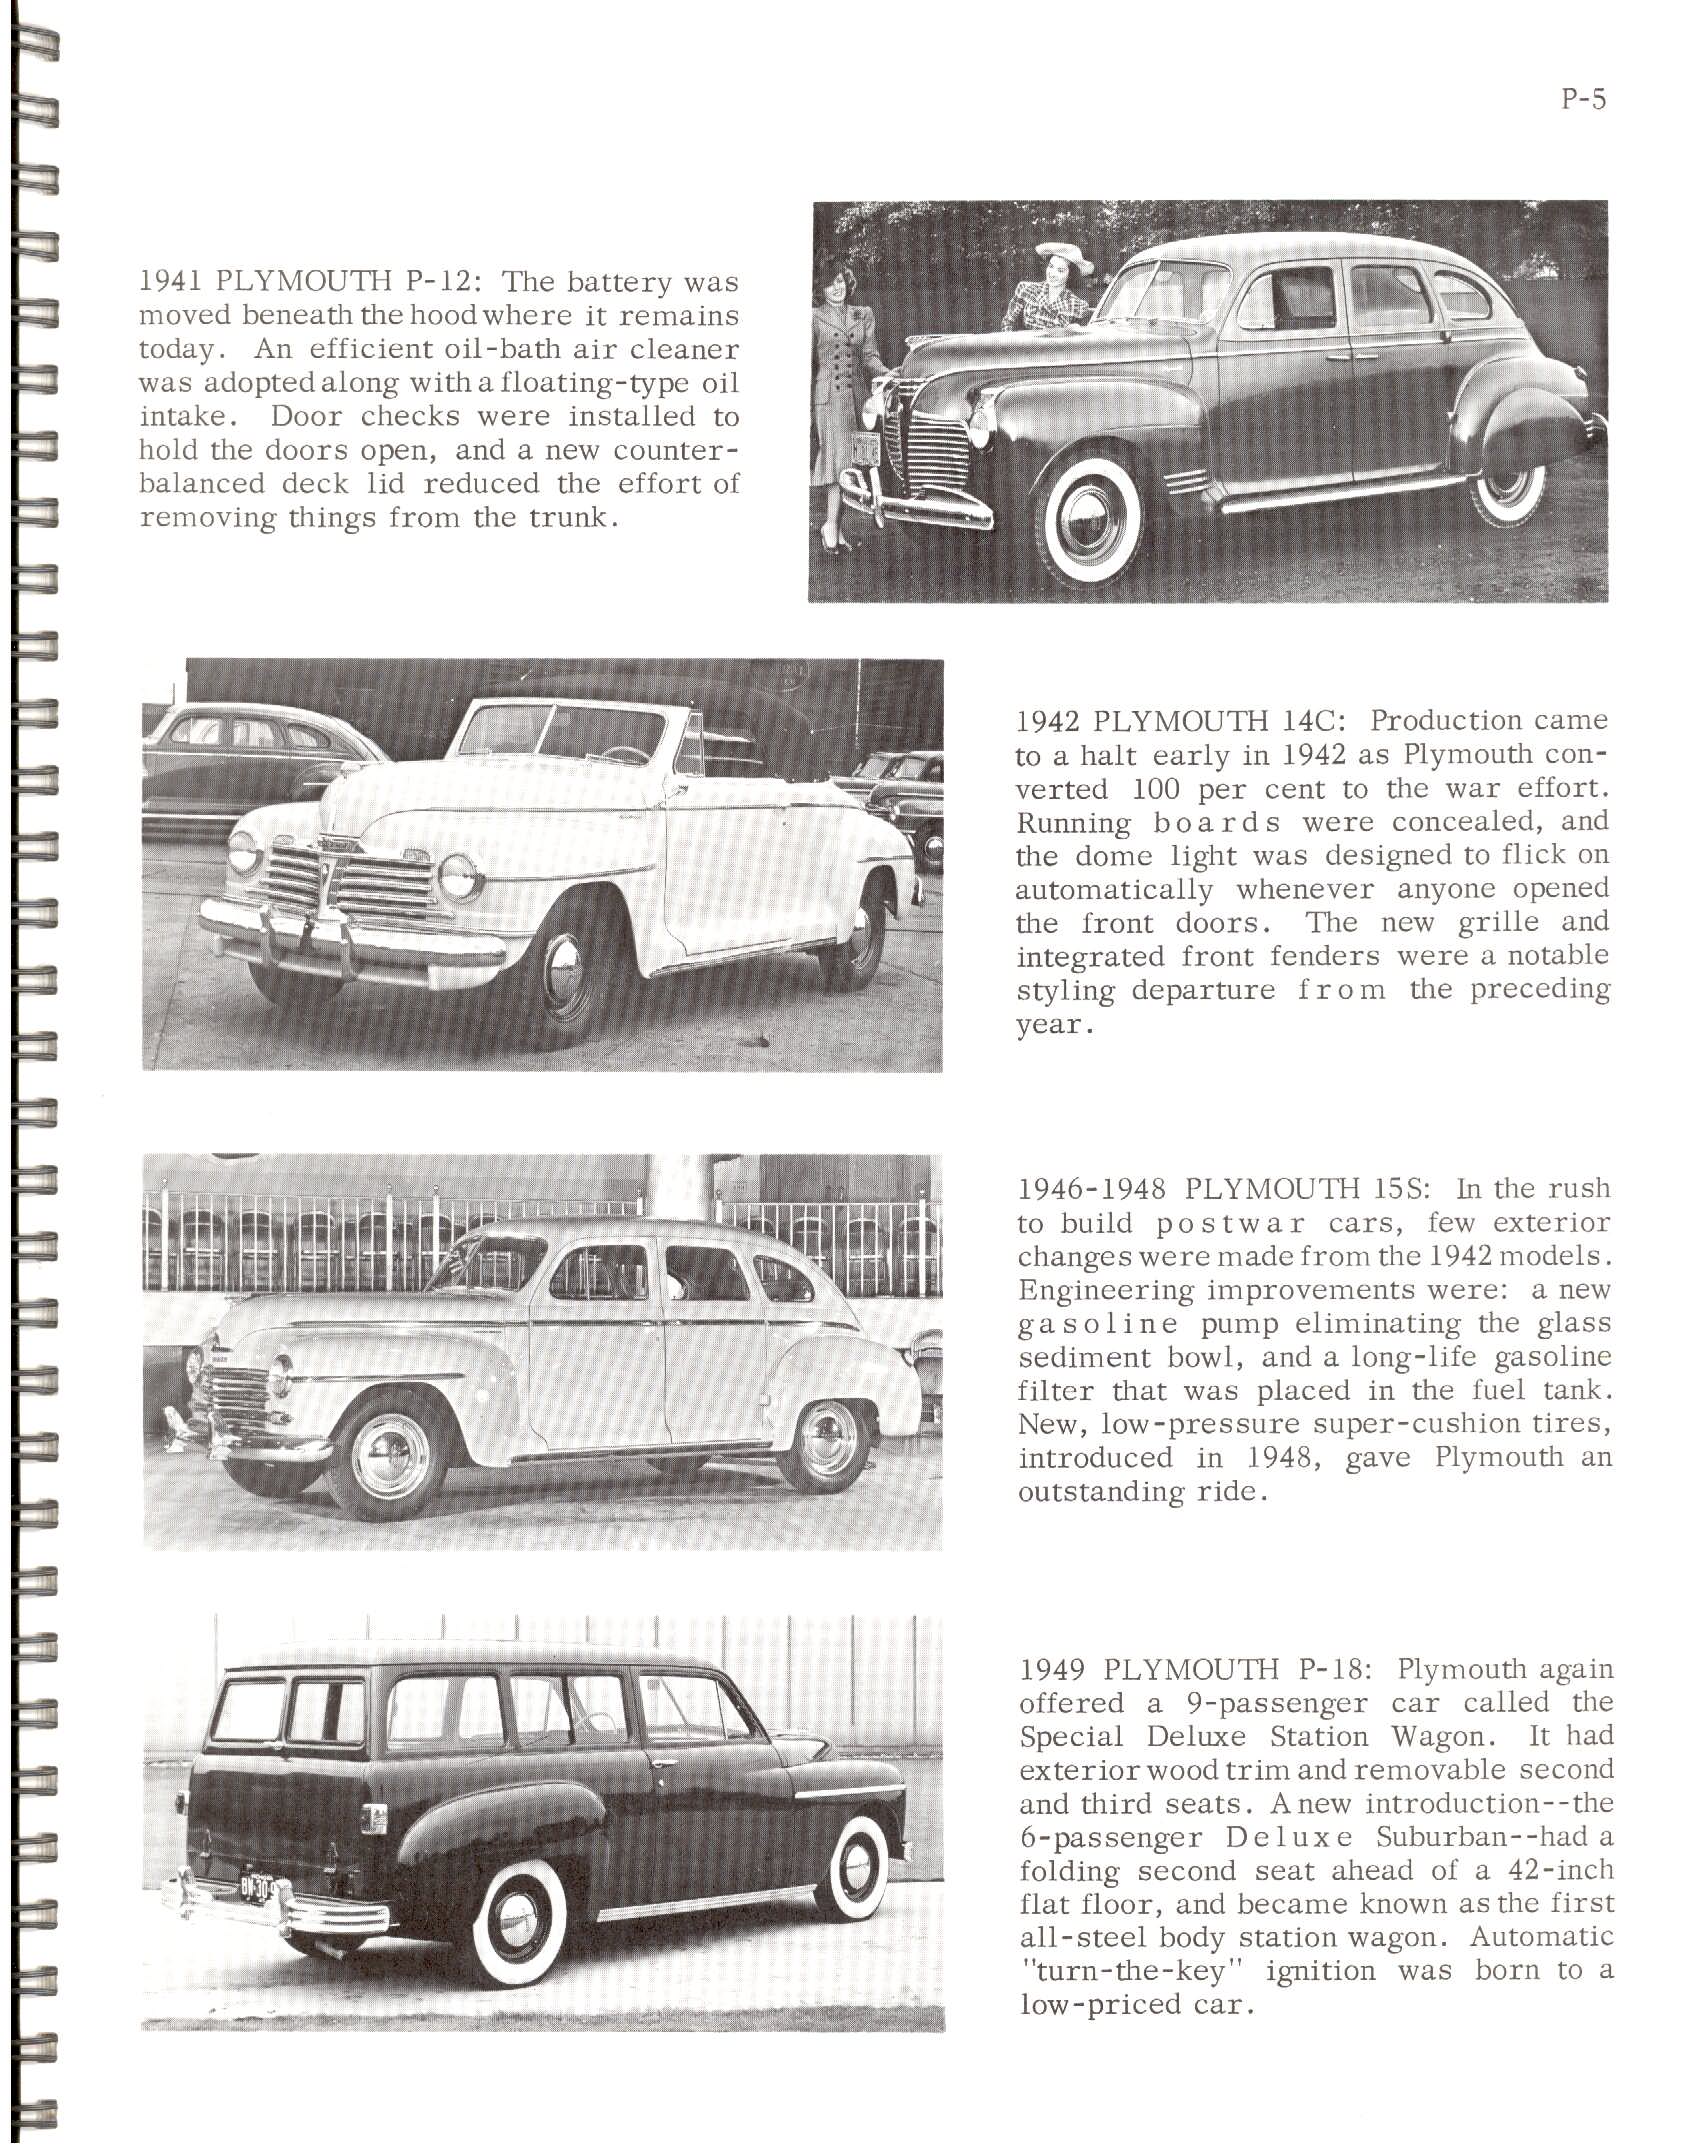 1966-History_Of_Chrysler_Cars-P05